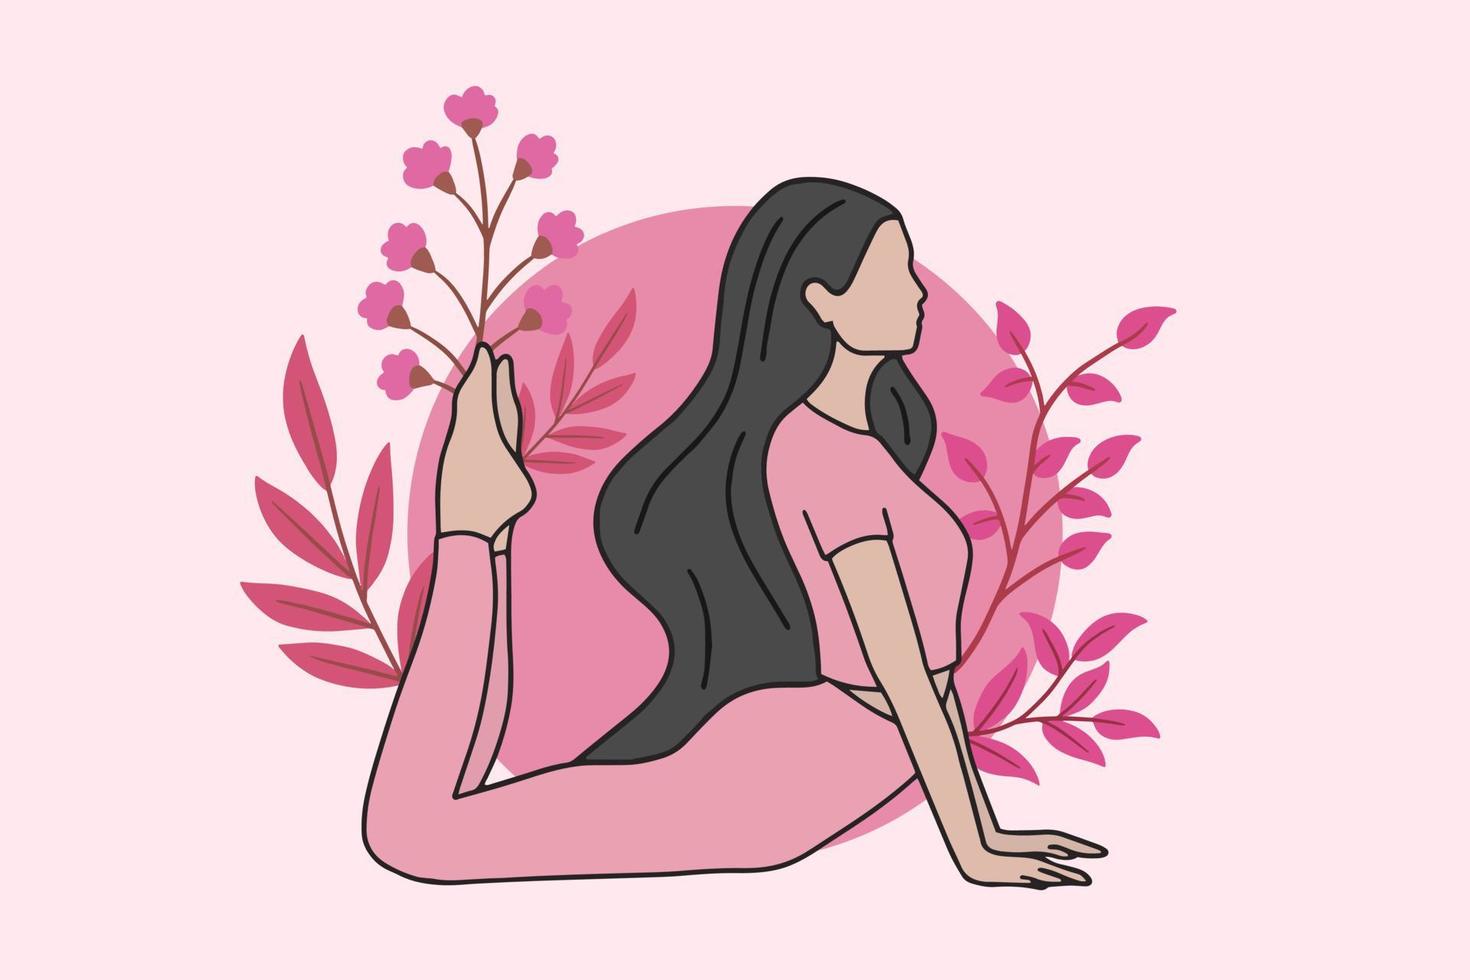 mujer meditando en yoga pacífico y estilo de vida saludable meditación personas posan relajación espiritual diseño de dibujos animados planos vector